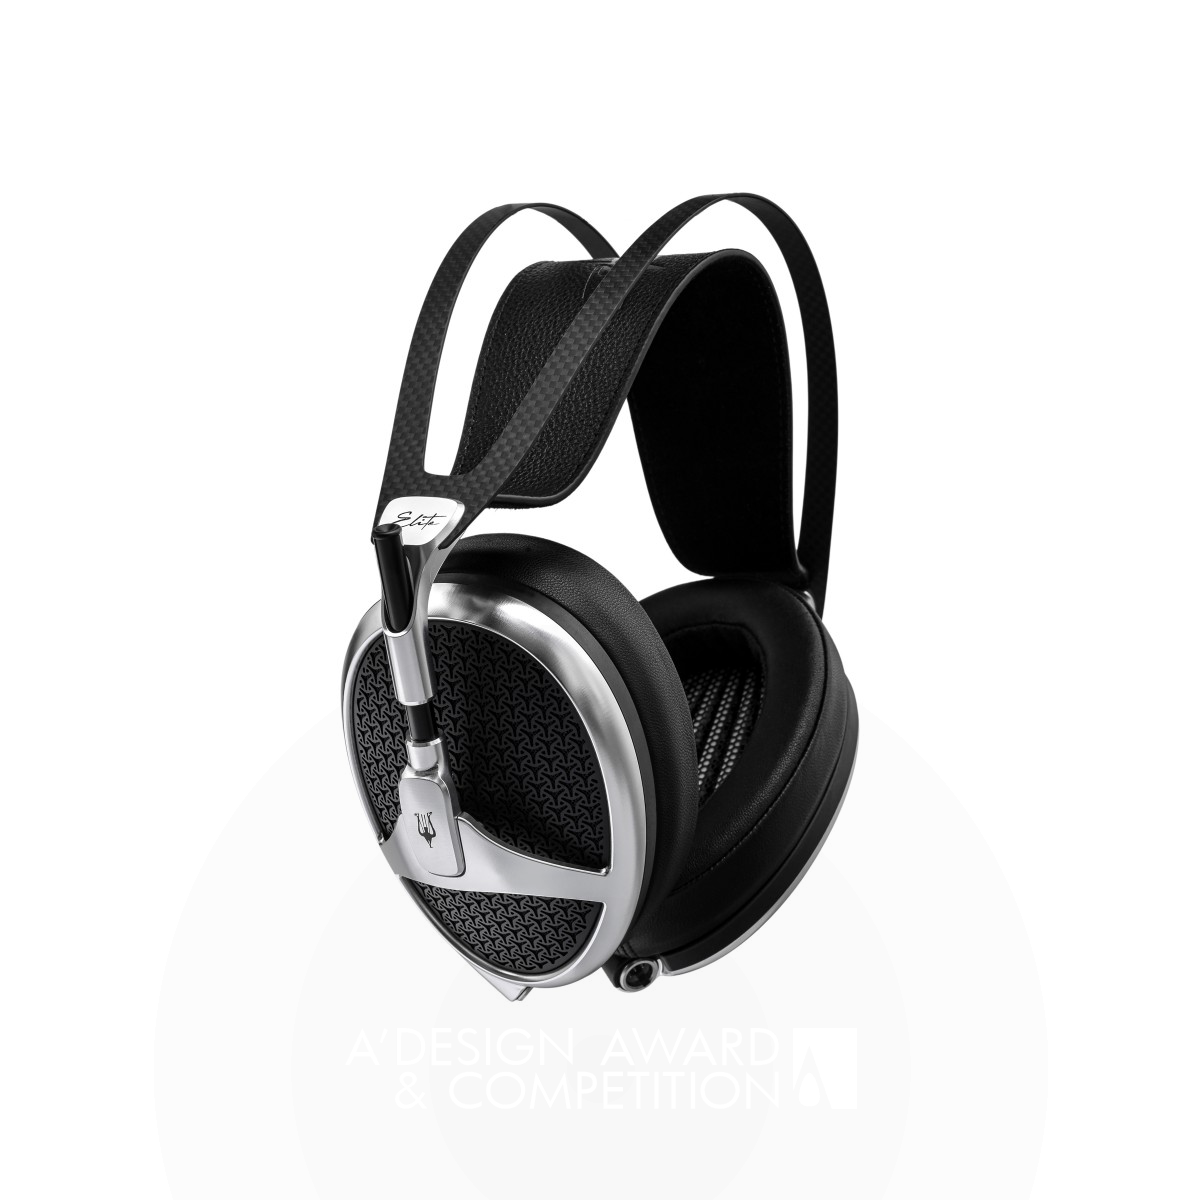 Elite: The Ultimate Planar Magnetic Headphones